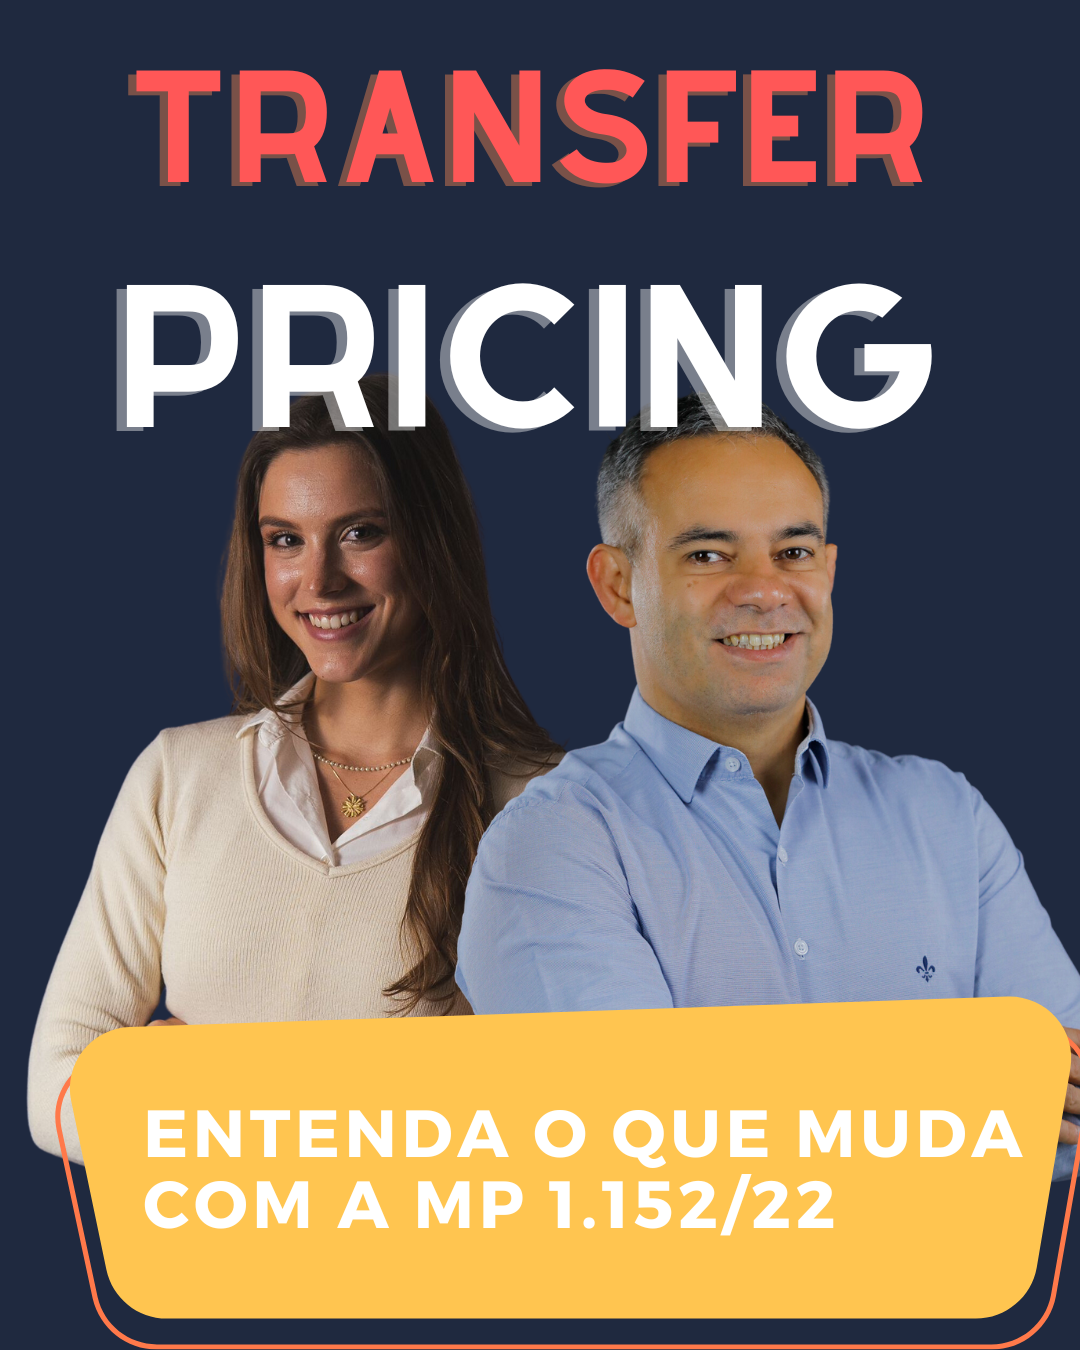 Preços de transferência (transfer pricing): entenda o que muda com a Medida Provisória n° 1.152/22 aprovada pelo Congresso